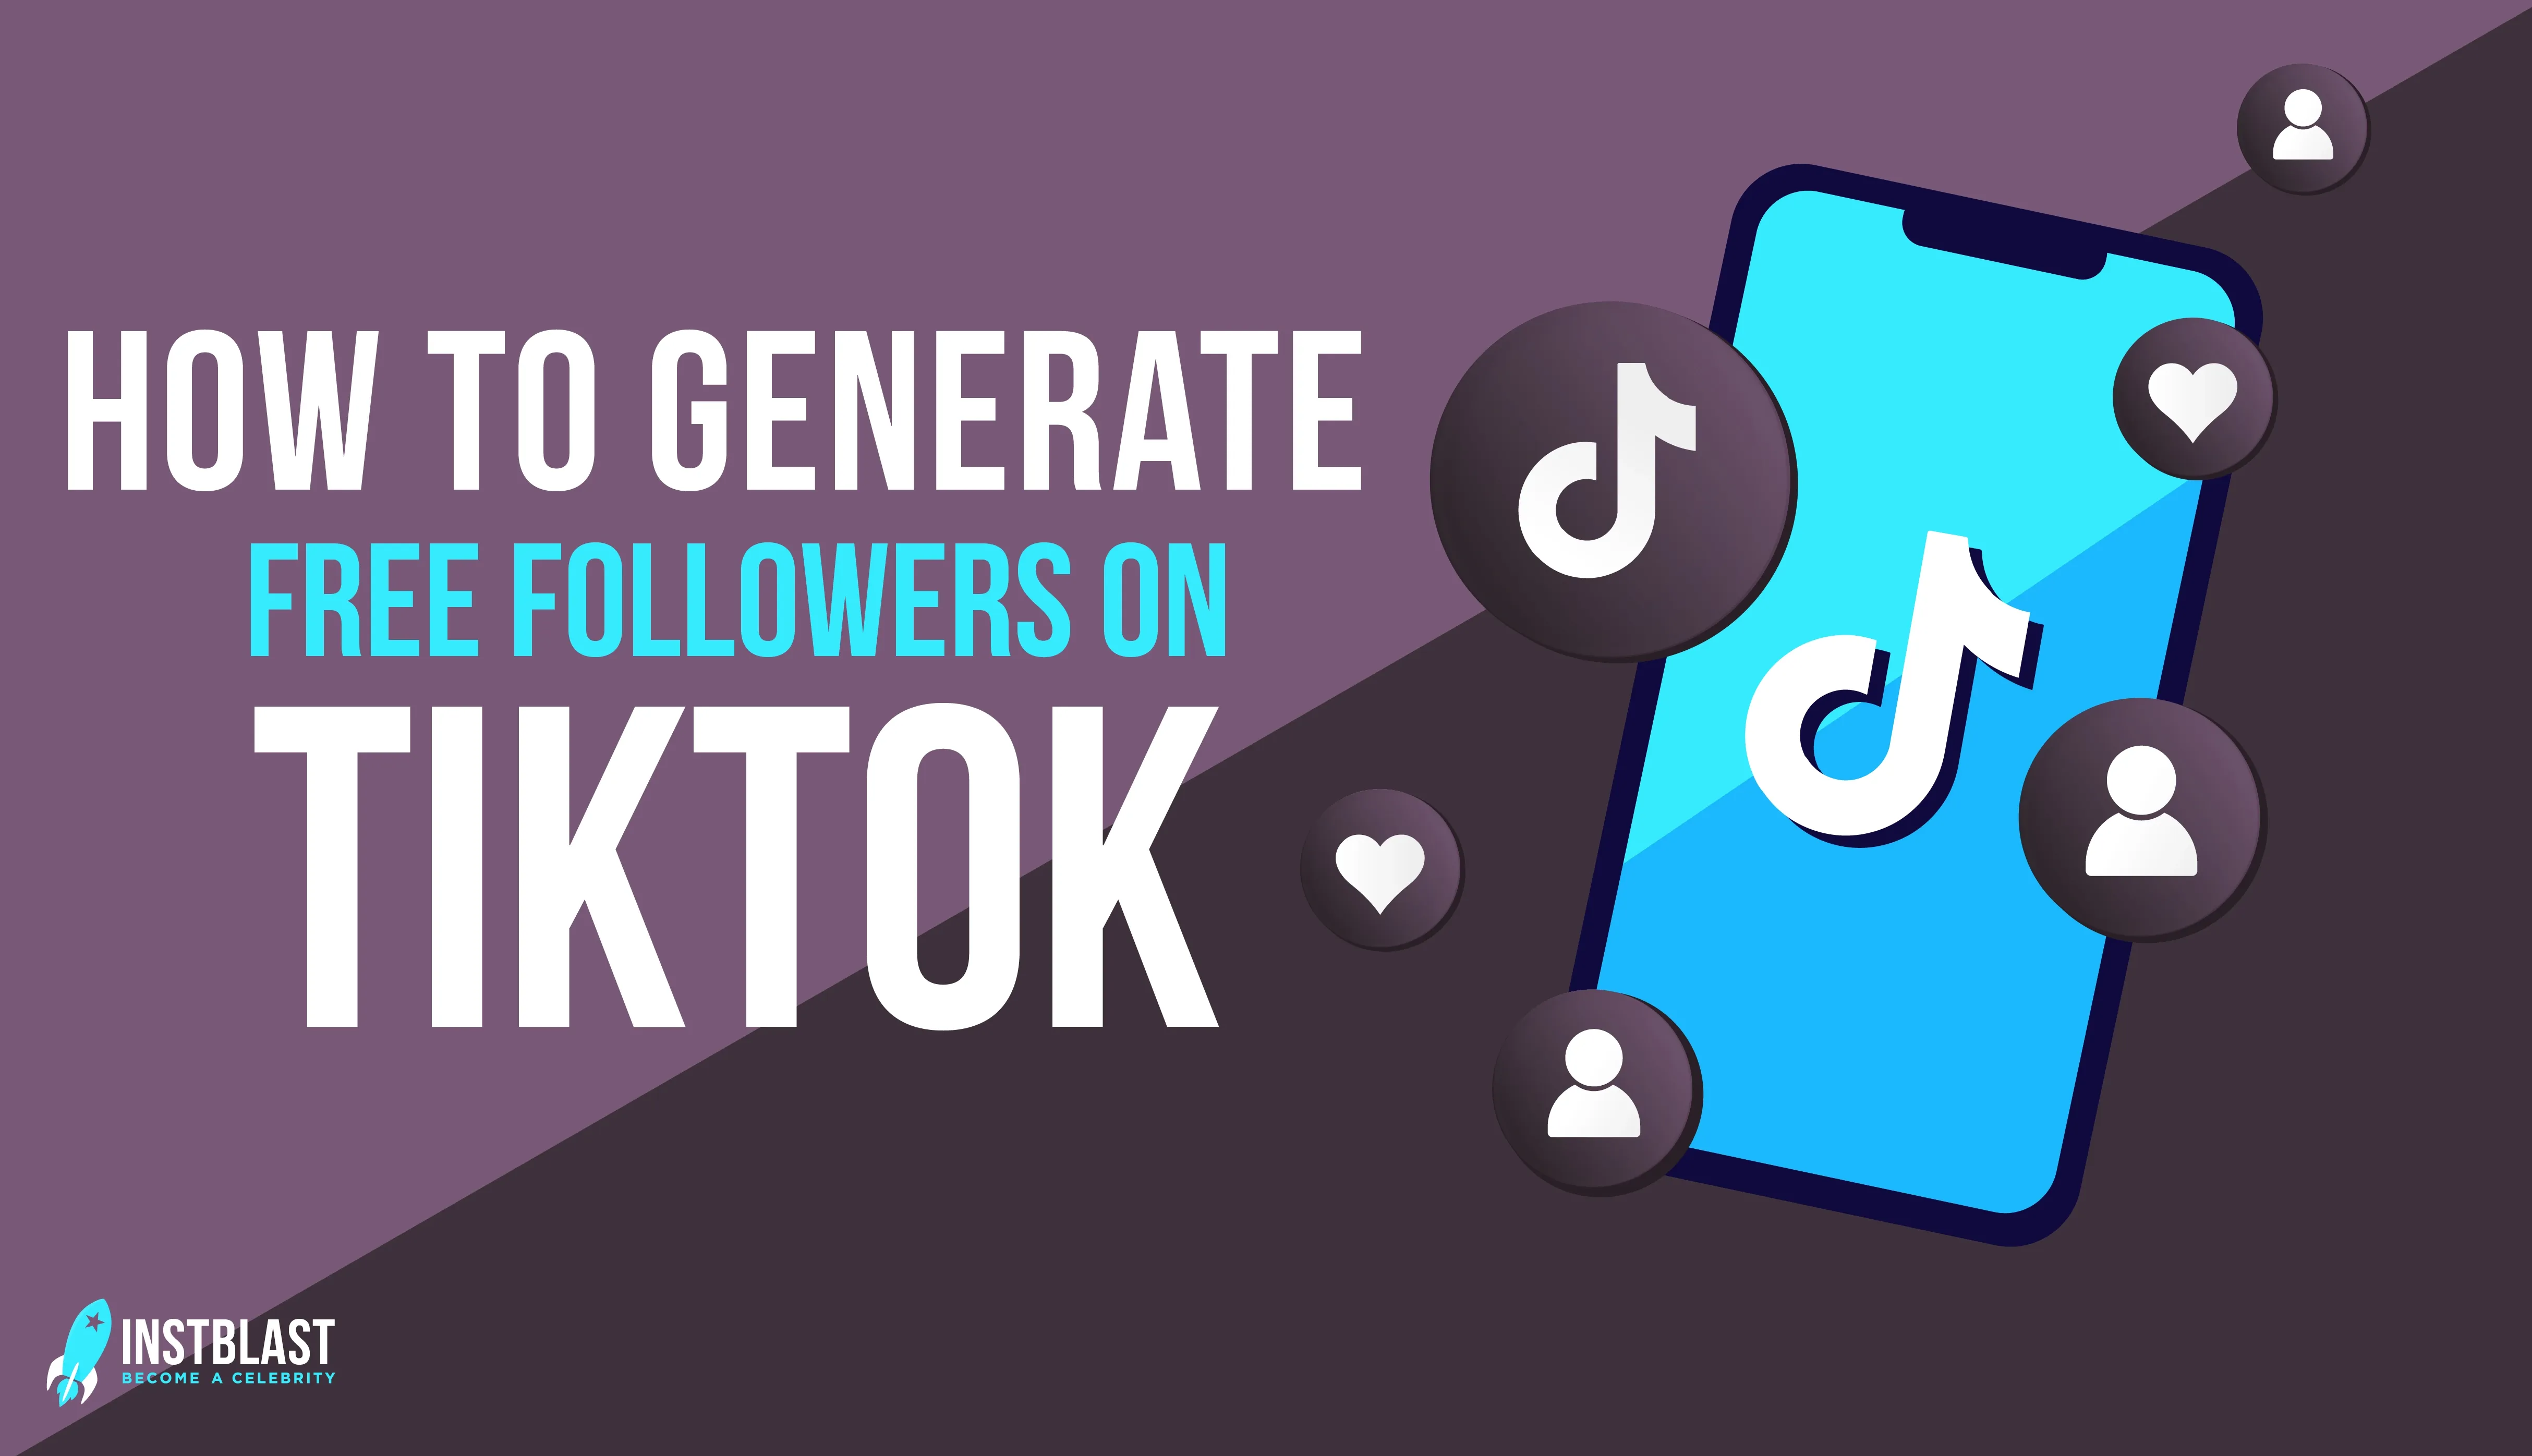 How to generate free followers on TikTok